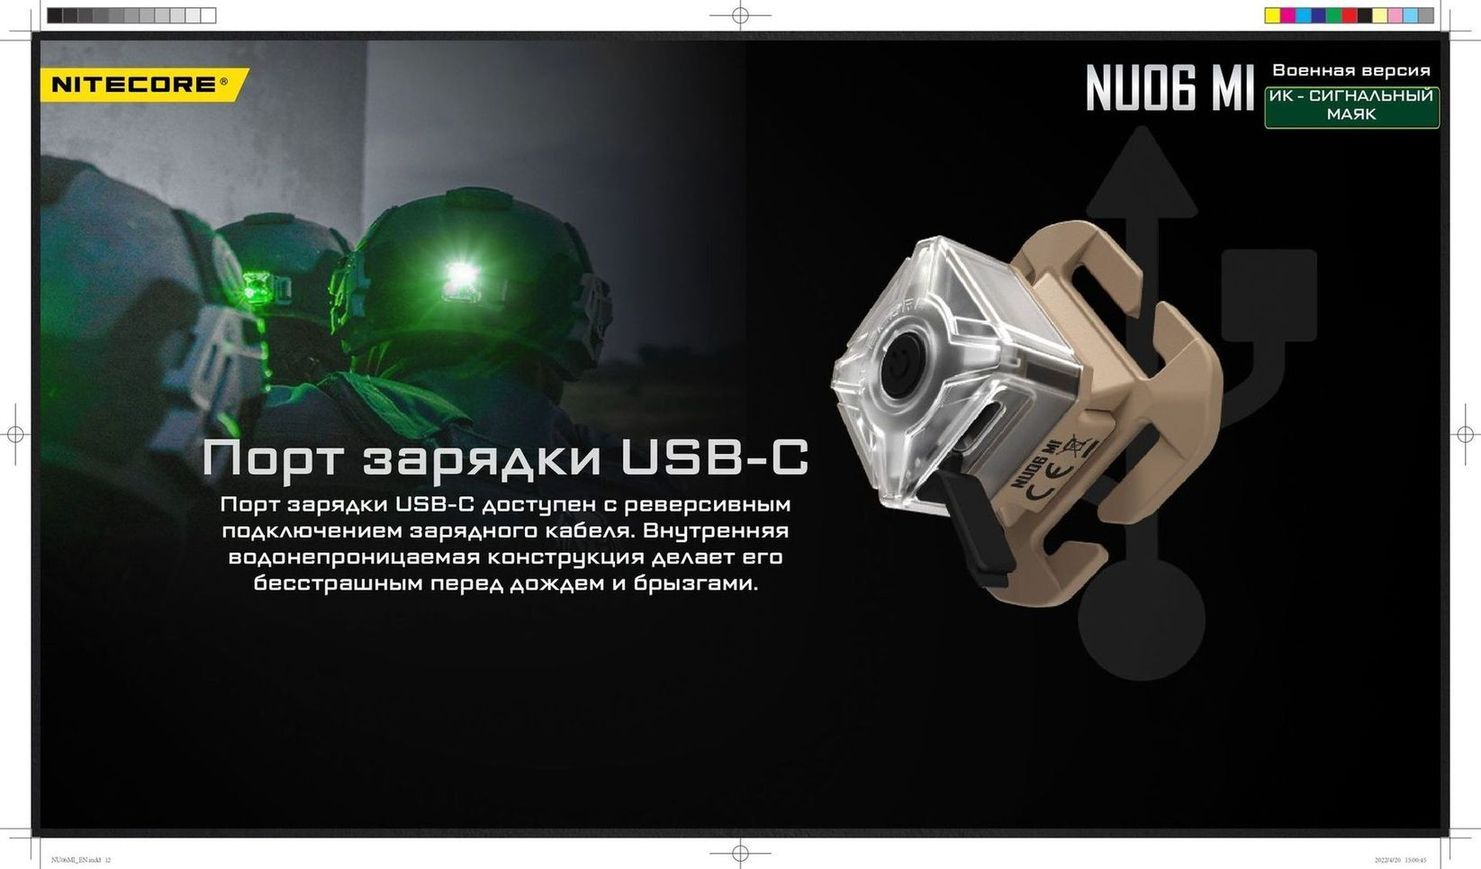 NU06MI Инфракрасный маяк, иК-свет (длина волны 940 нм) 75часов 1.5м З/У USB-C АКБ Li-ion 3.7v 250mAh